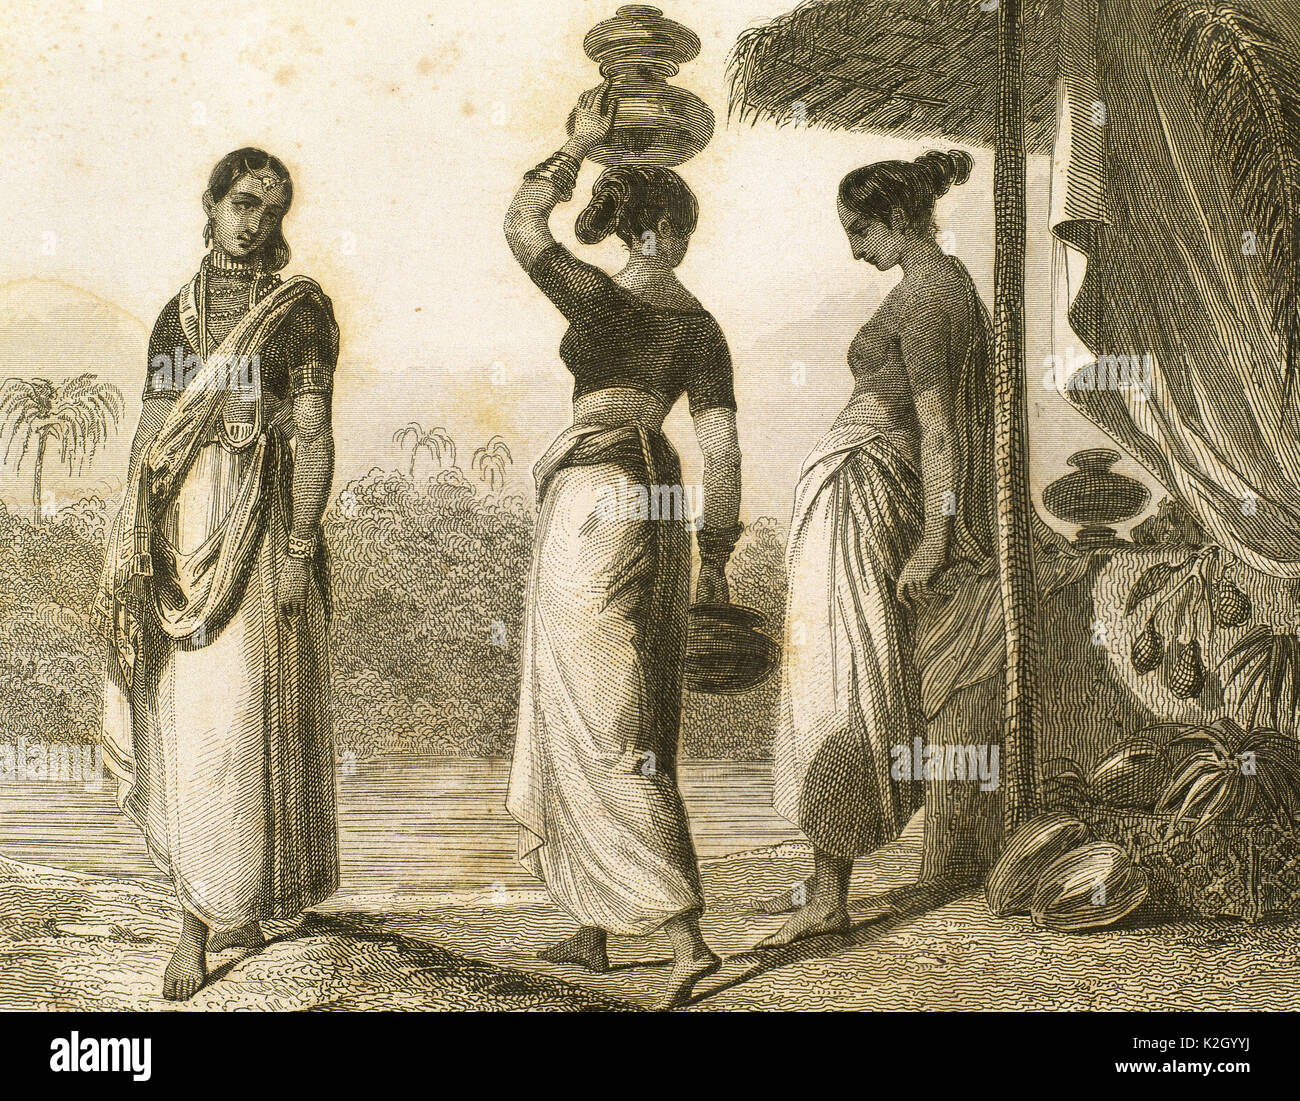 Indien. Frauen, die zu einem anderen sozialen Klassen. Lemaitre Direxit. Gravur. Anonym. "Panorama Universal, Indien, 1845". Stockfoto